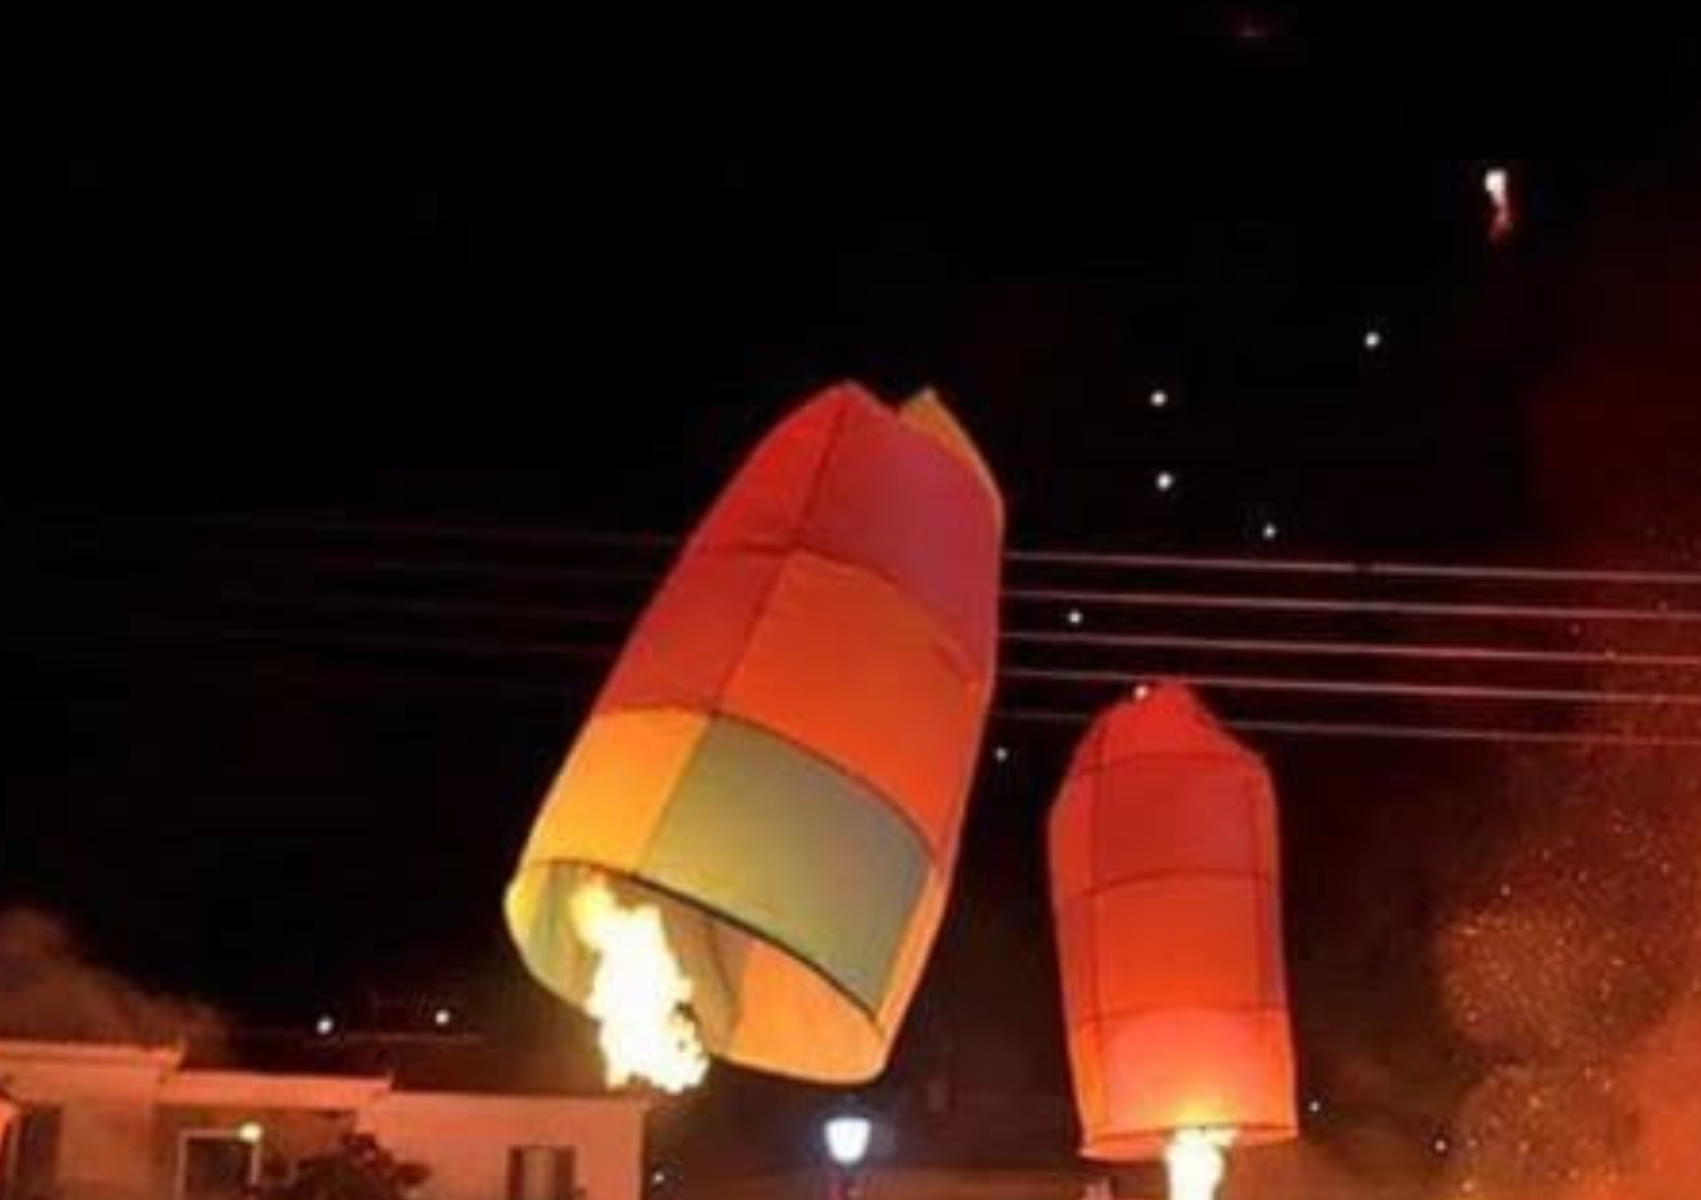 Πάσχα στο Λεωνίδιο Αρκαδίας: Ένα παραμυθένιο σκηνικό με τα φαντασμαγορικά φλεγόμενα αερόστατα